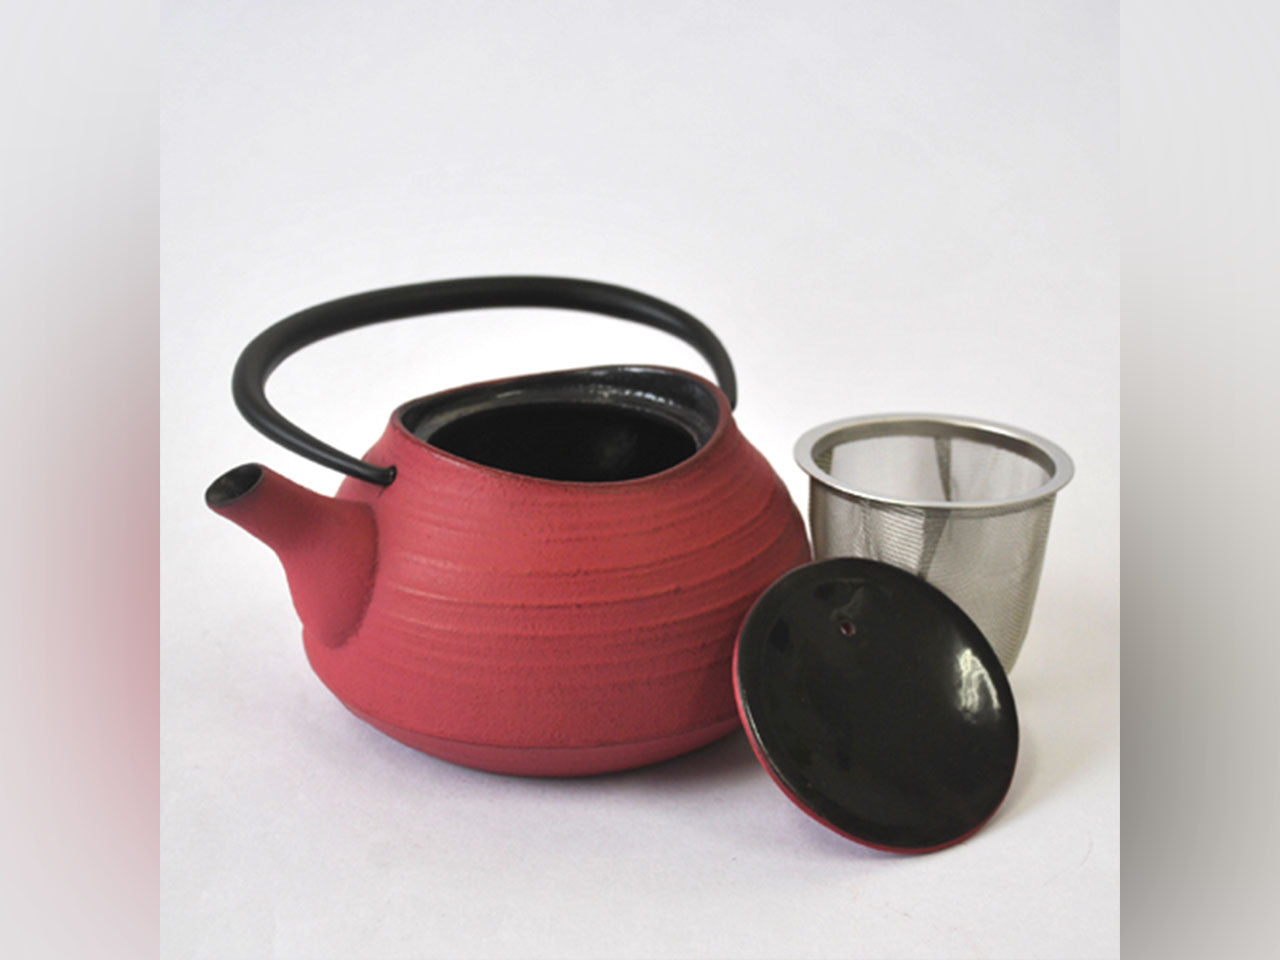 茶具 茶壶 刷毛目 0.4L 玫瑰粉 南部铁器 金属工艺品